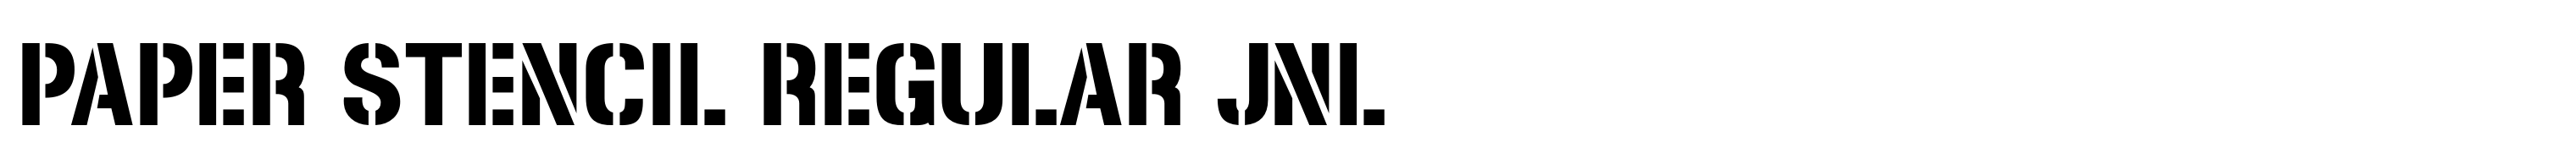 Paper Stencil Regular JNL